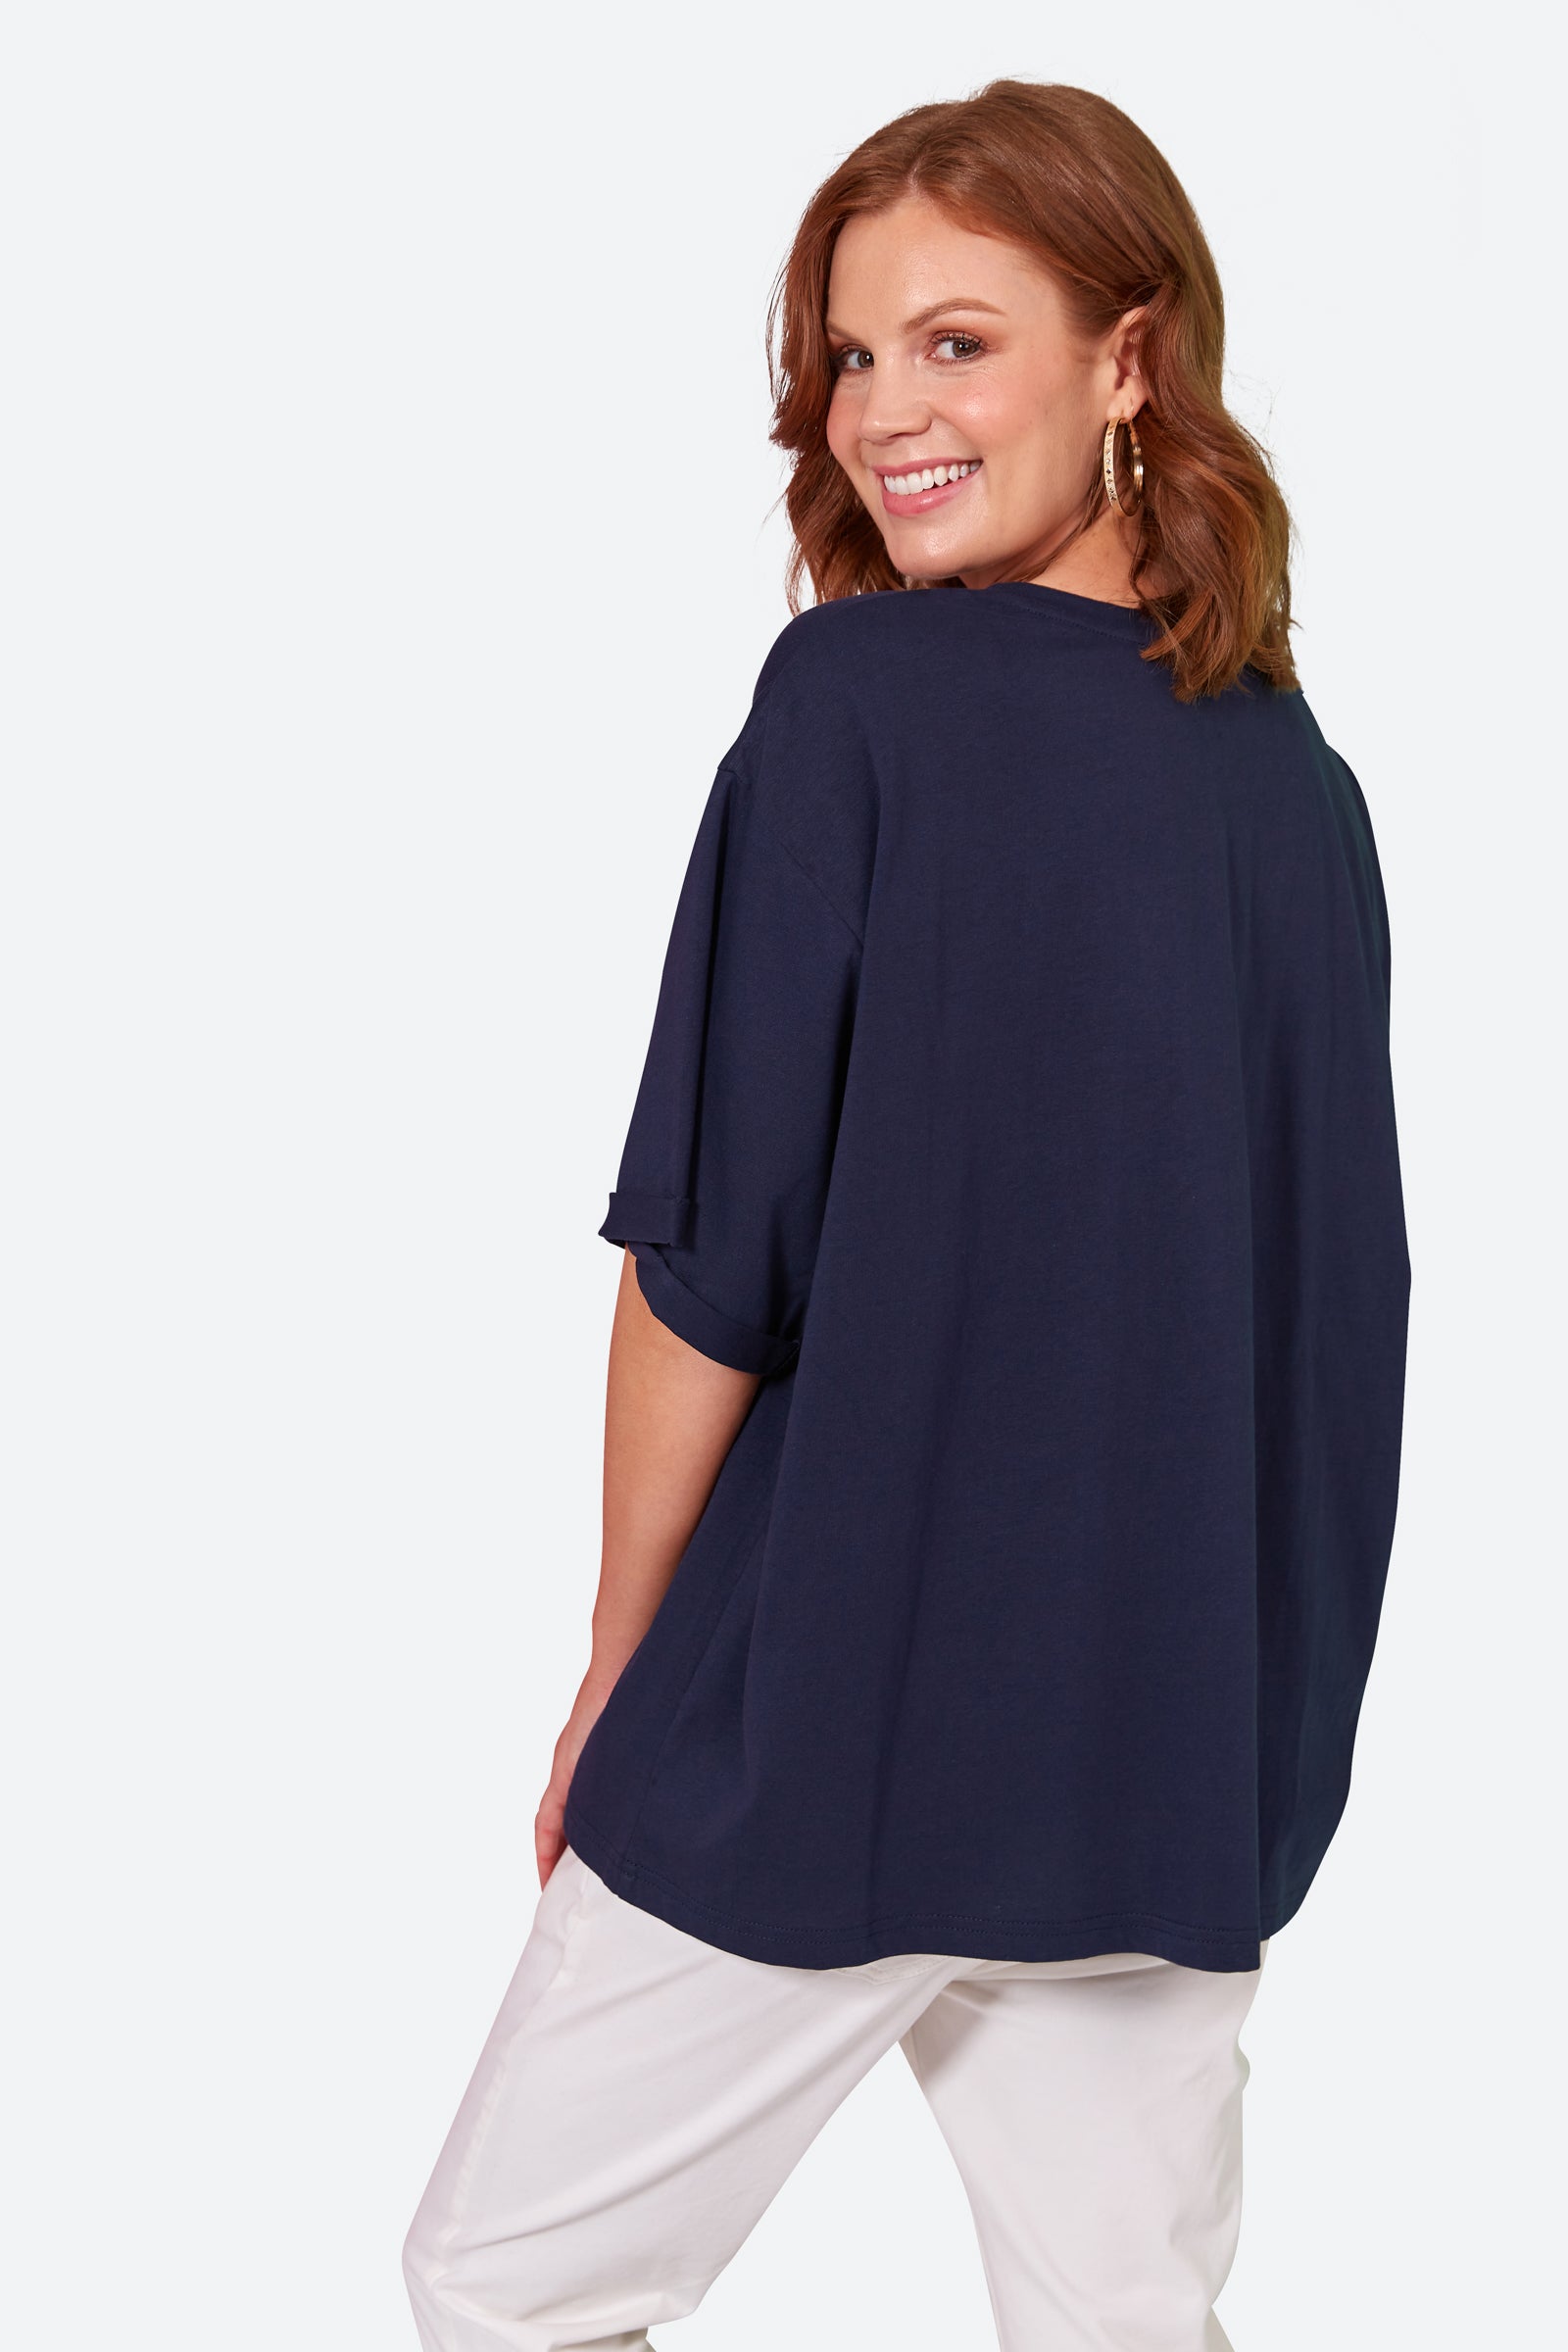 C'est La Vie Tshirt - Sapphire - eb&ive Clothing - Top Tshirt S/S One Size